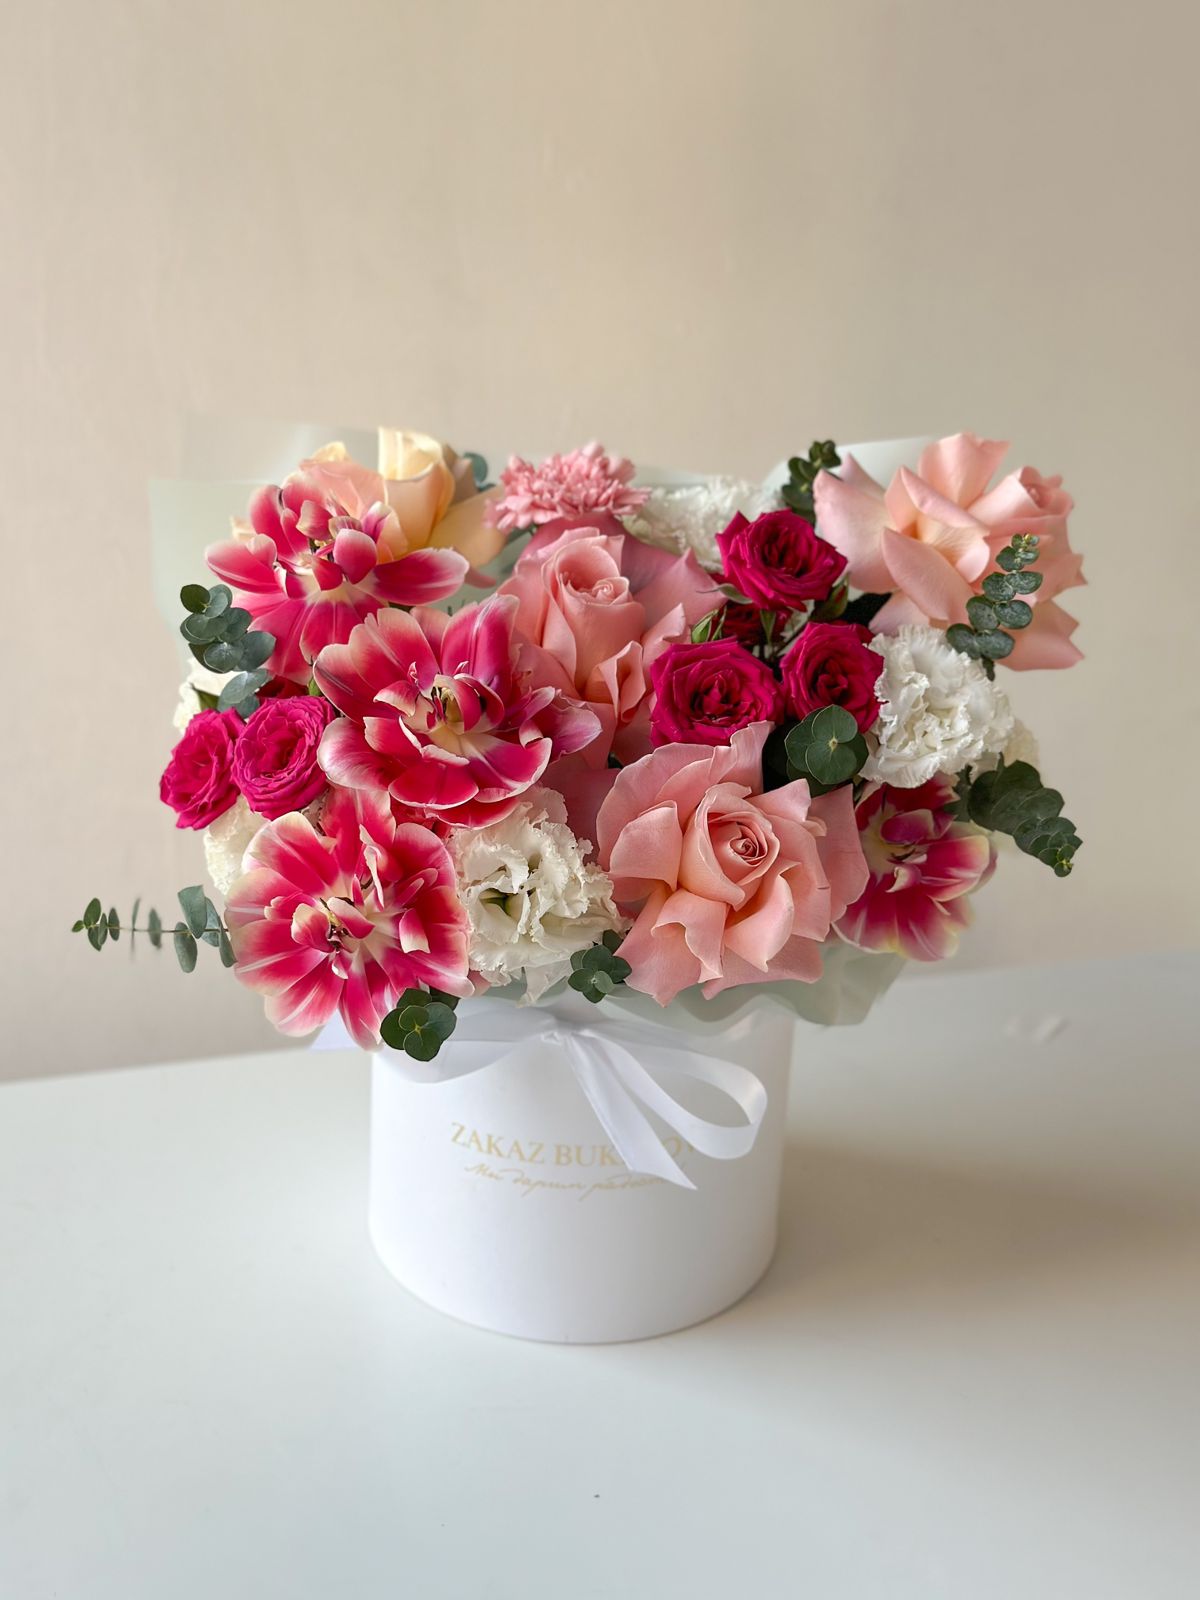 Композиция "Расцвет весны" из гвоздик, лизиантусов, роз и тюльпанов в коробке